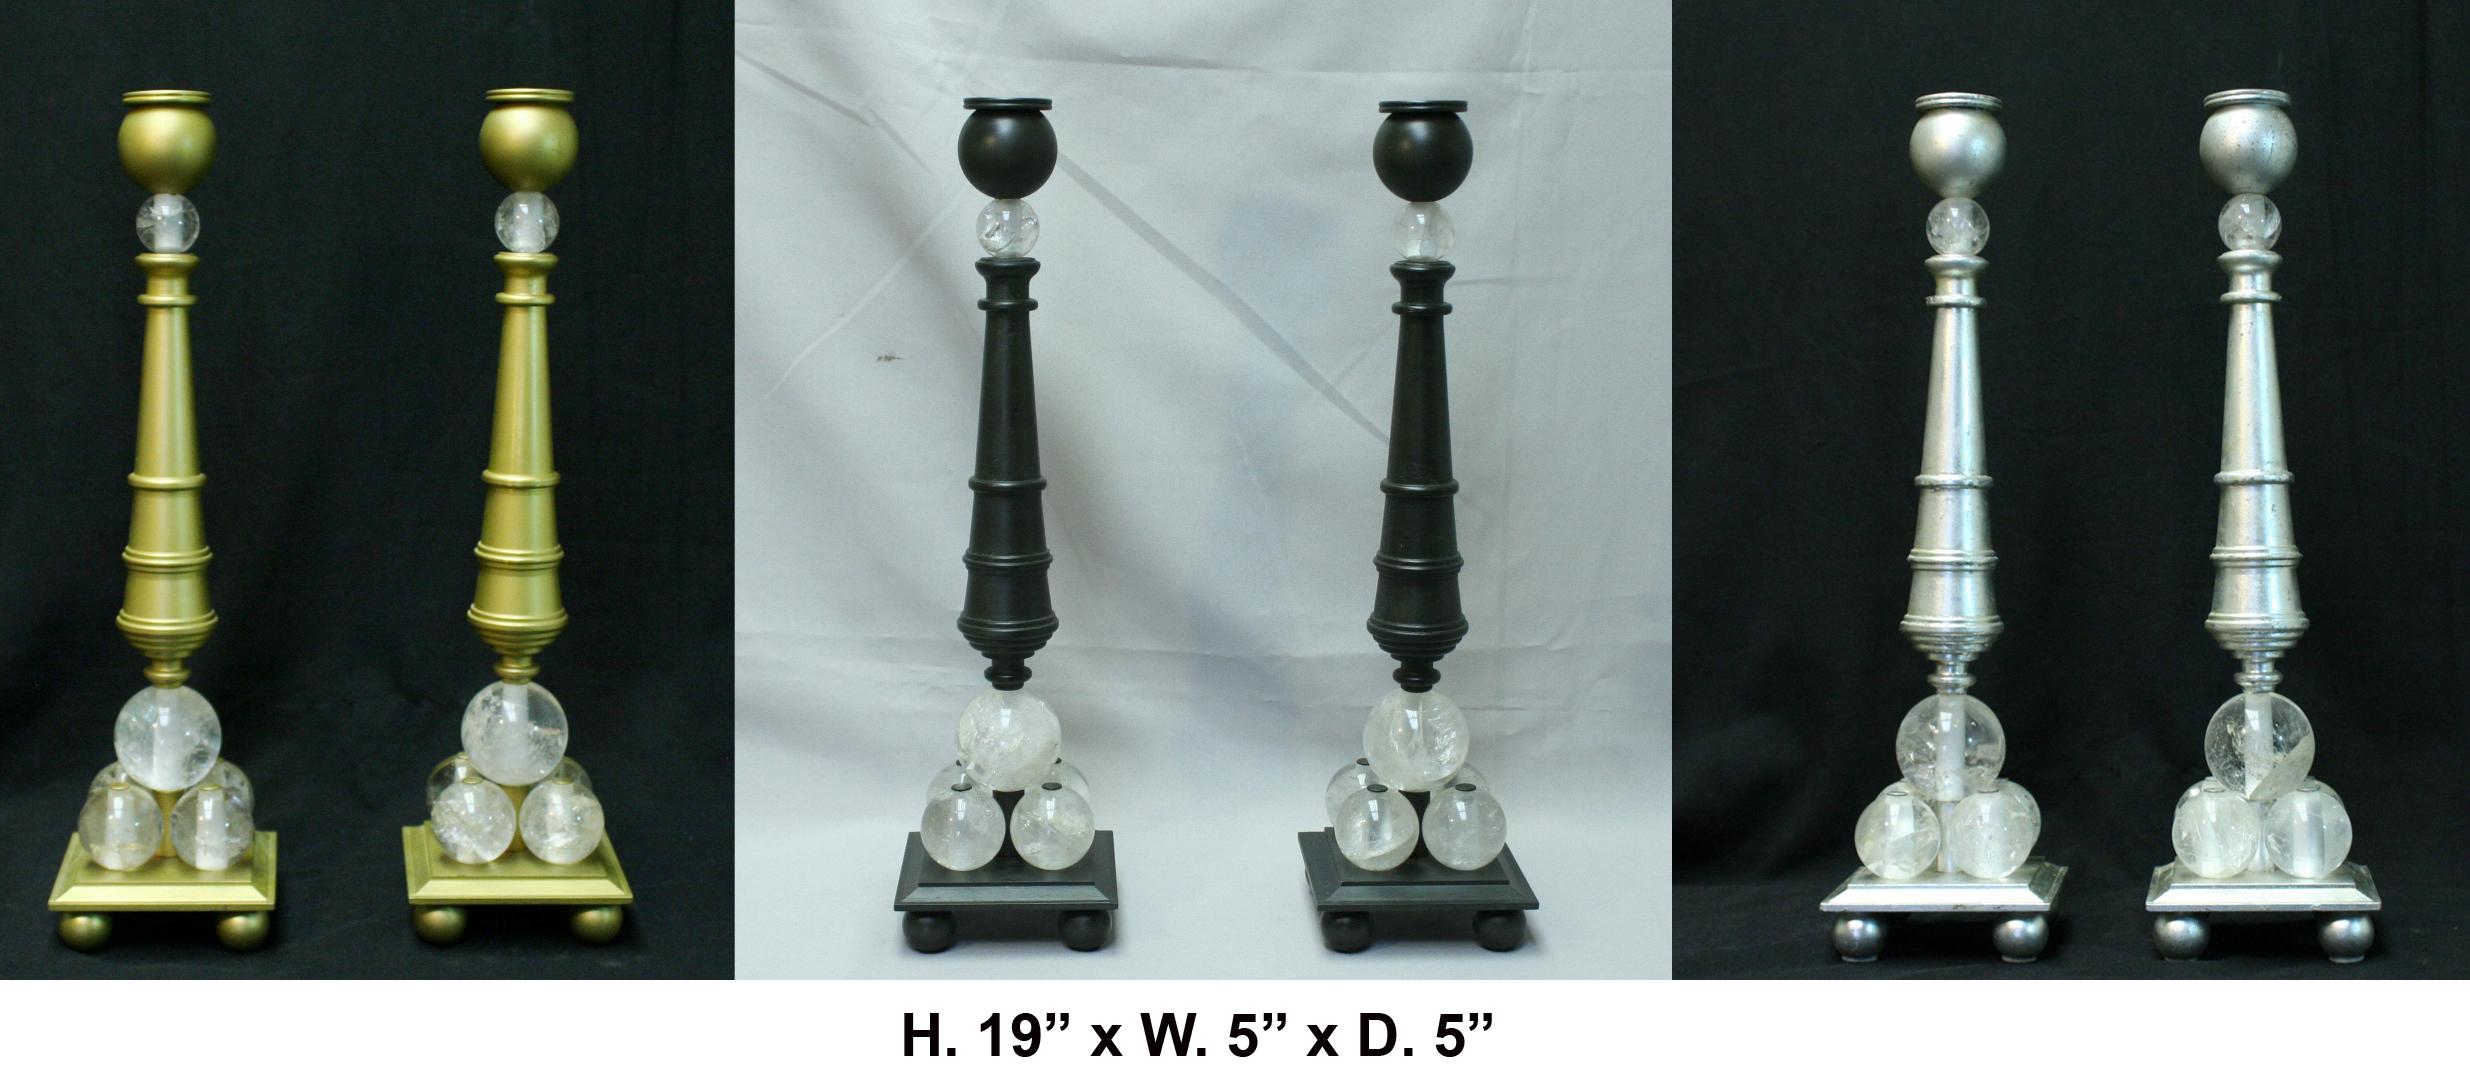 Hübsches Paar Kerzenständer aus Bergkristall-Bronze im modernen Stil. Schwarzes Finish.
Ein schwarzer, bauchiger Kerzenhalter befindet sich auf einem sich verjüngenden, gedrechselten Schaft, der von fünf handgeschnitzten und handpolierten